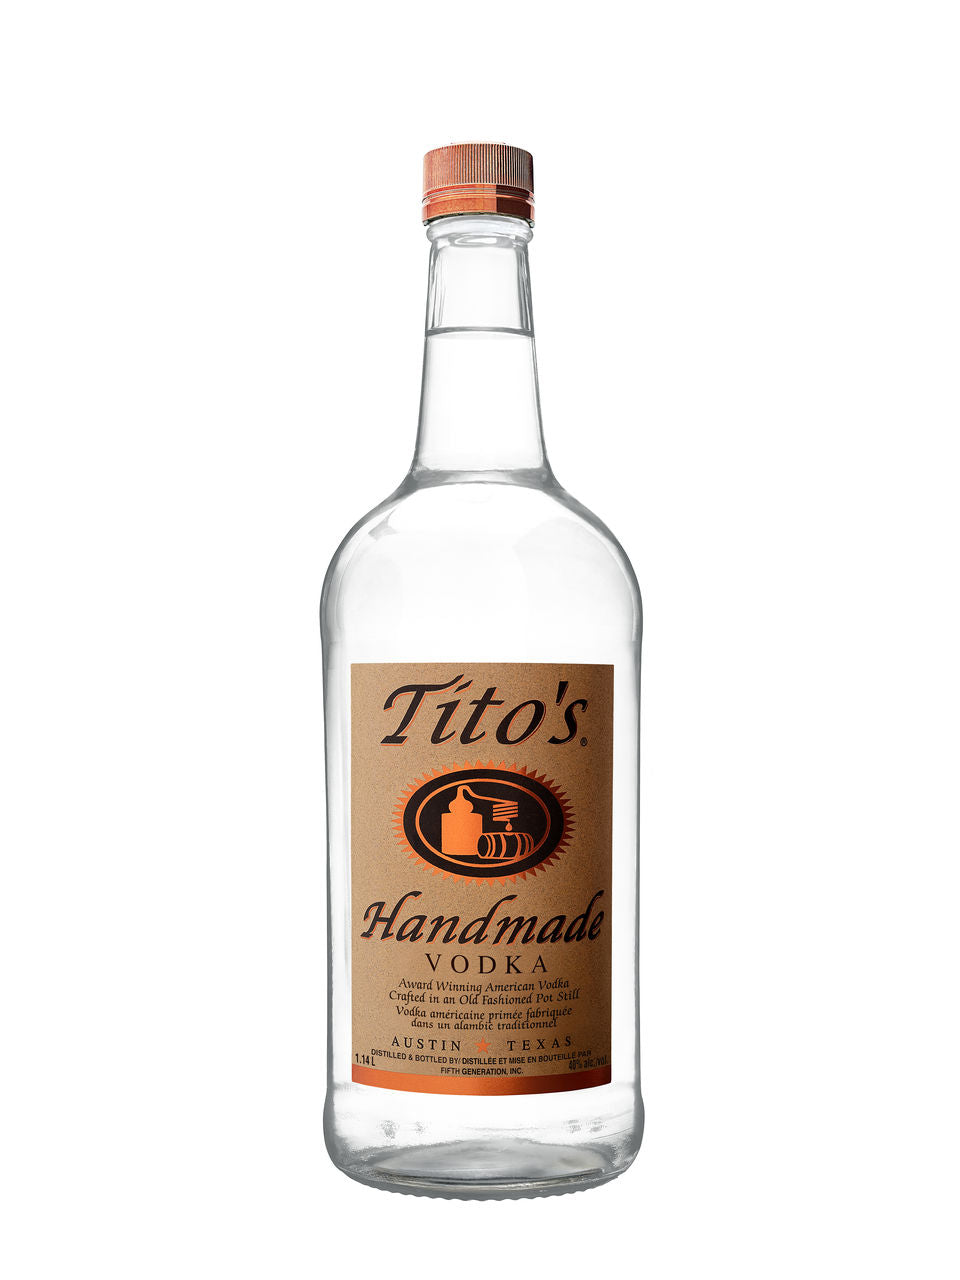 Tito's Handmade Vodka 1140 mL bottle